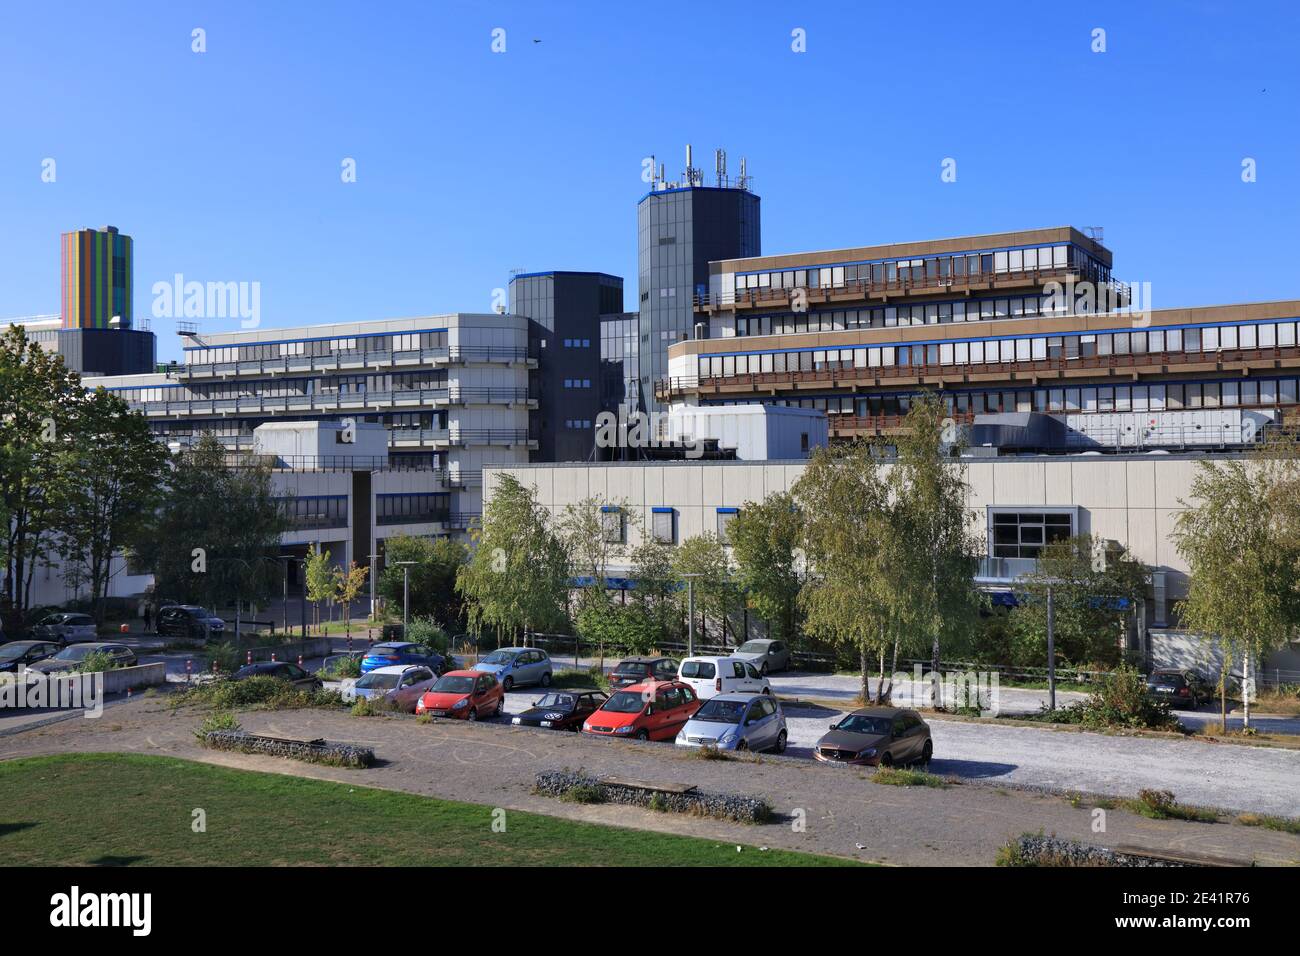 ESSEN, 20. SEPTEMBER 2020: Campus der Universität Duisburg-Essen in Essen. Sie ist eine der 10 größten Universitäten in Deutschland. Stockfoto